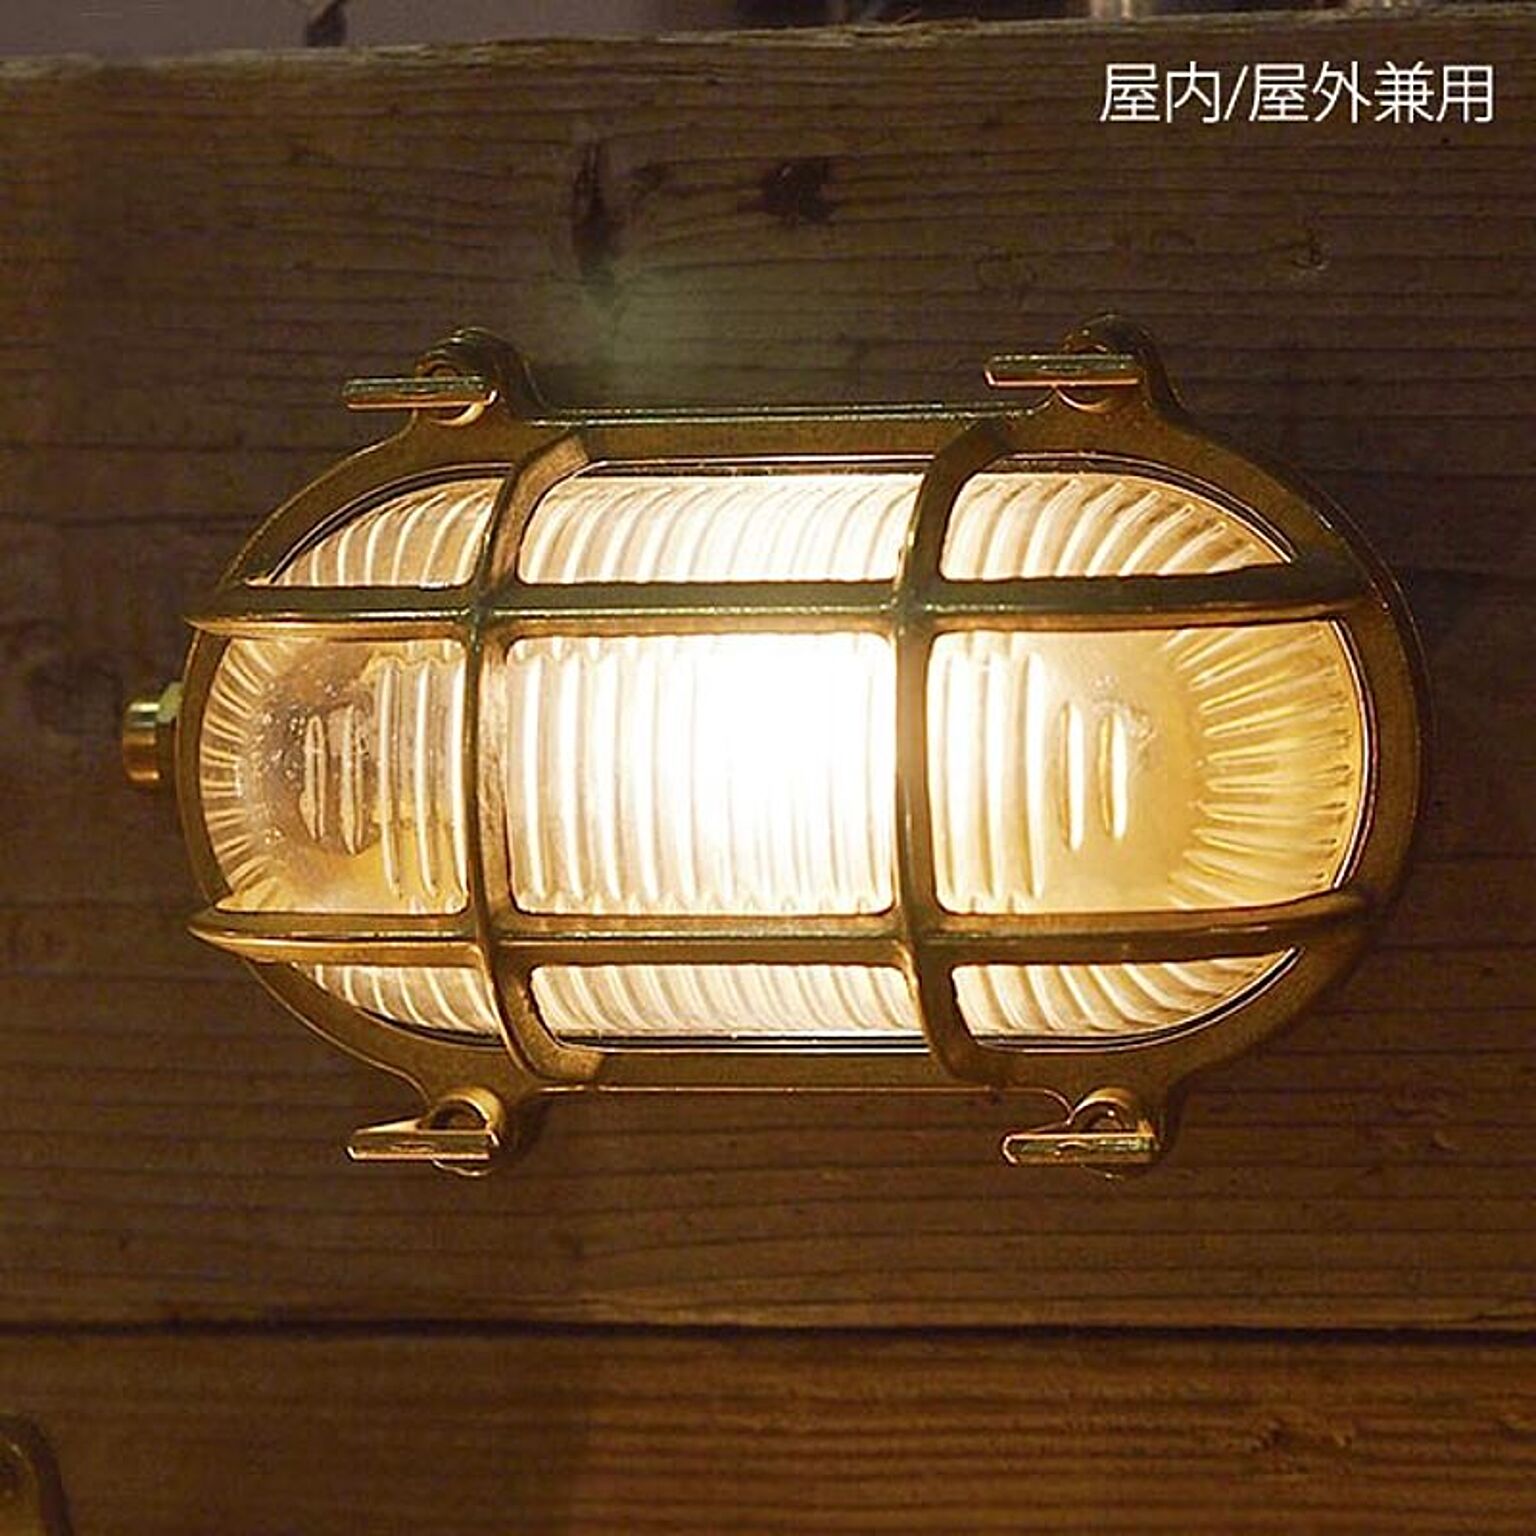 日本正規代理店品 ウォールランプ アートワークスタジオ ARTWORKSTUDIO ビーチハウス ベーシックランプ コードなし 屋内 屋外兼用  Beach house-basic lamp BR-5017